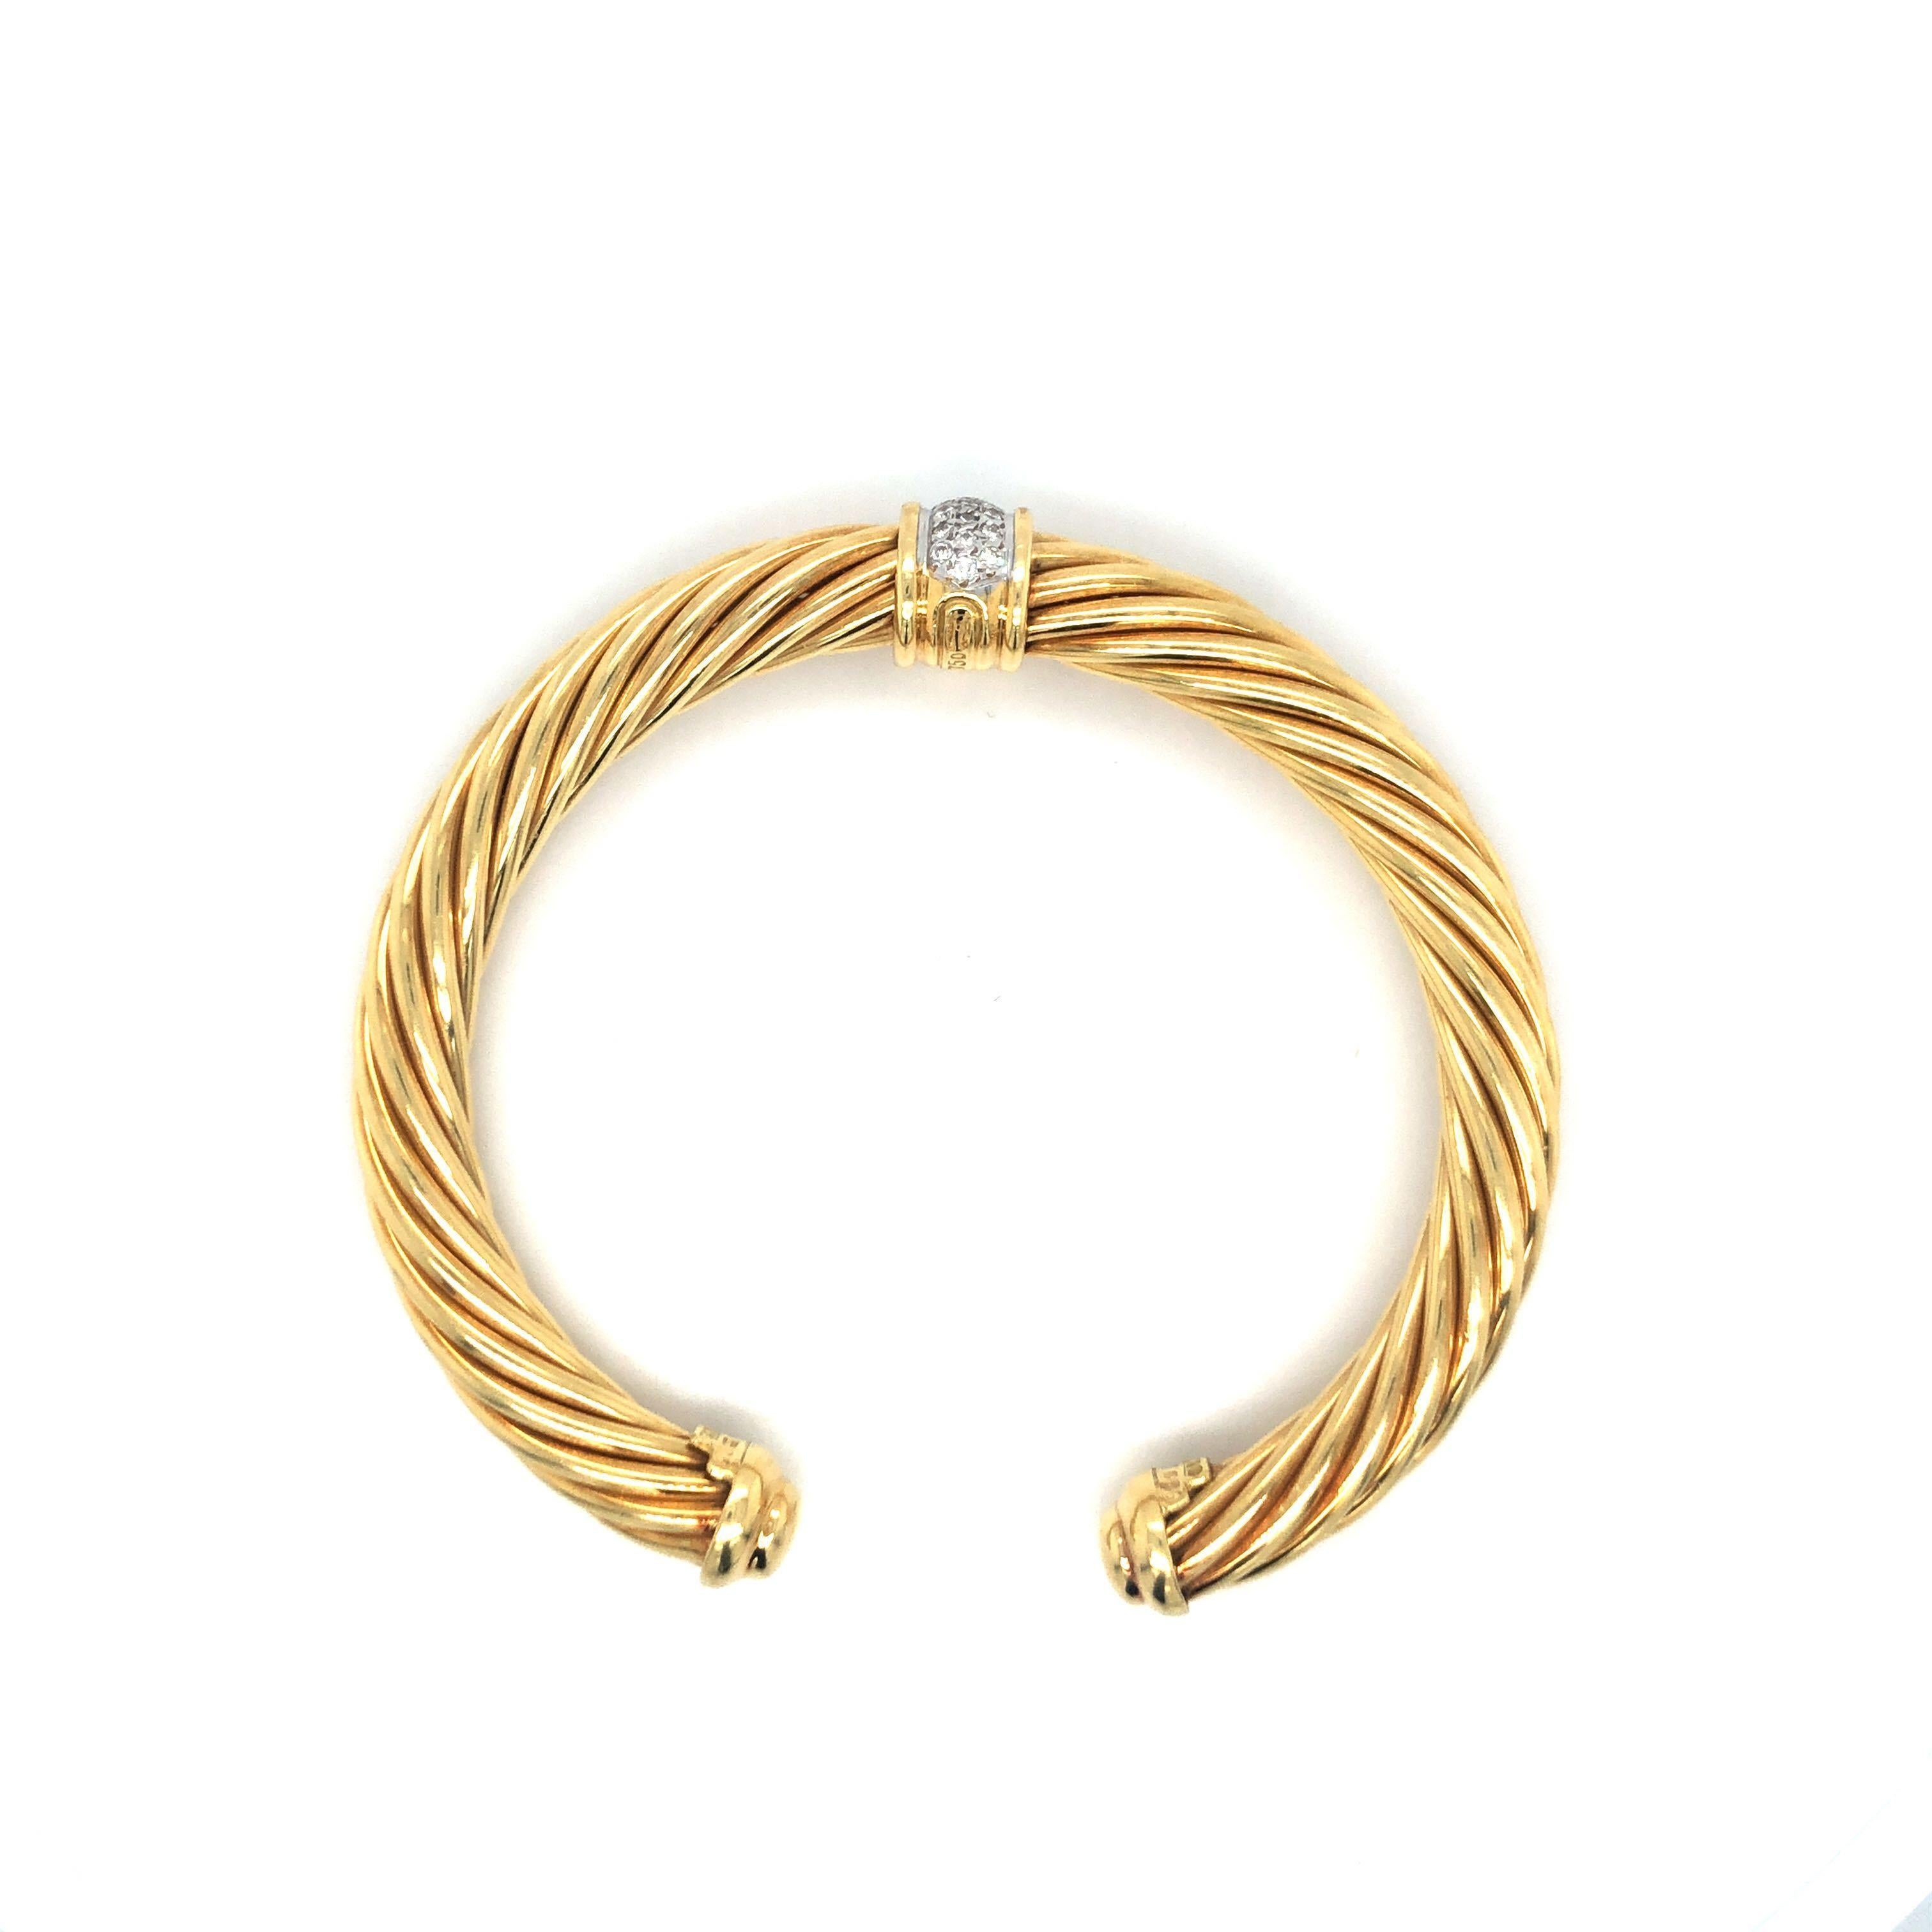 David Yurman 18 Karat Yellow Gold and Diamond Twisted Cable Cuff Bracelet 2